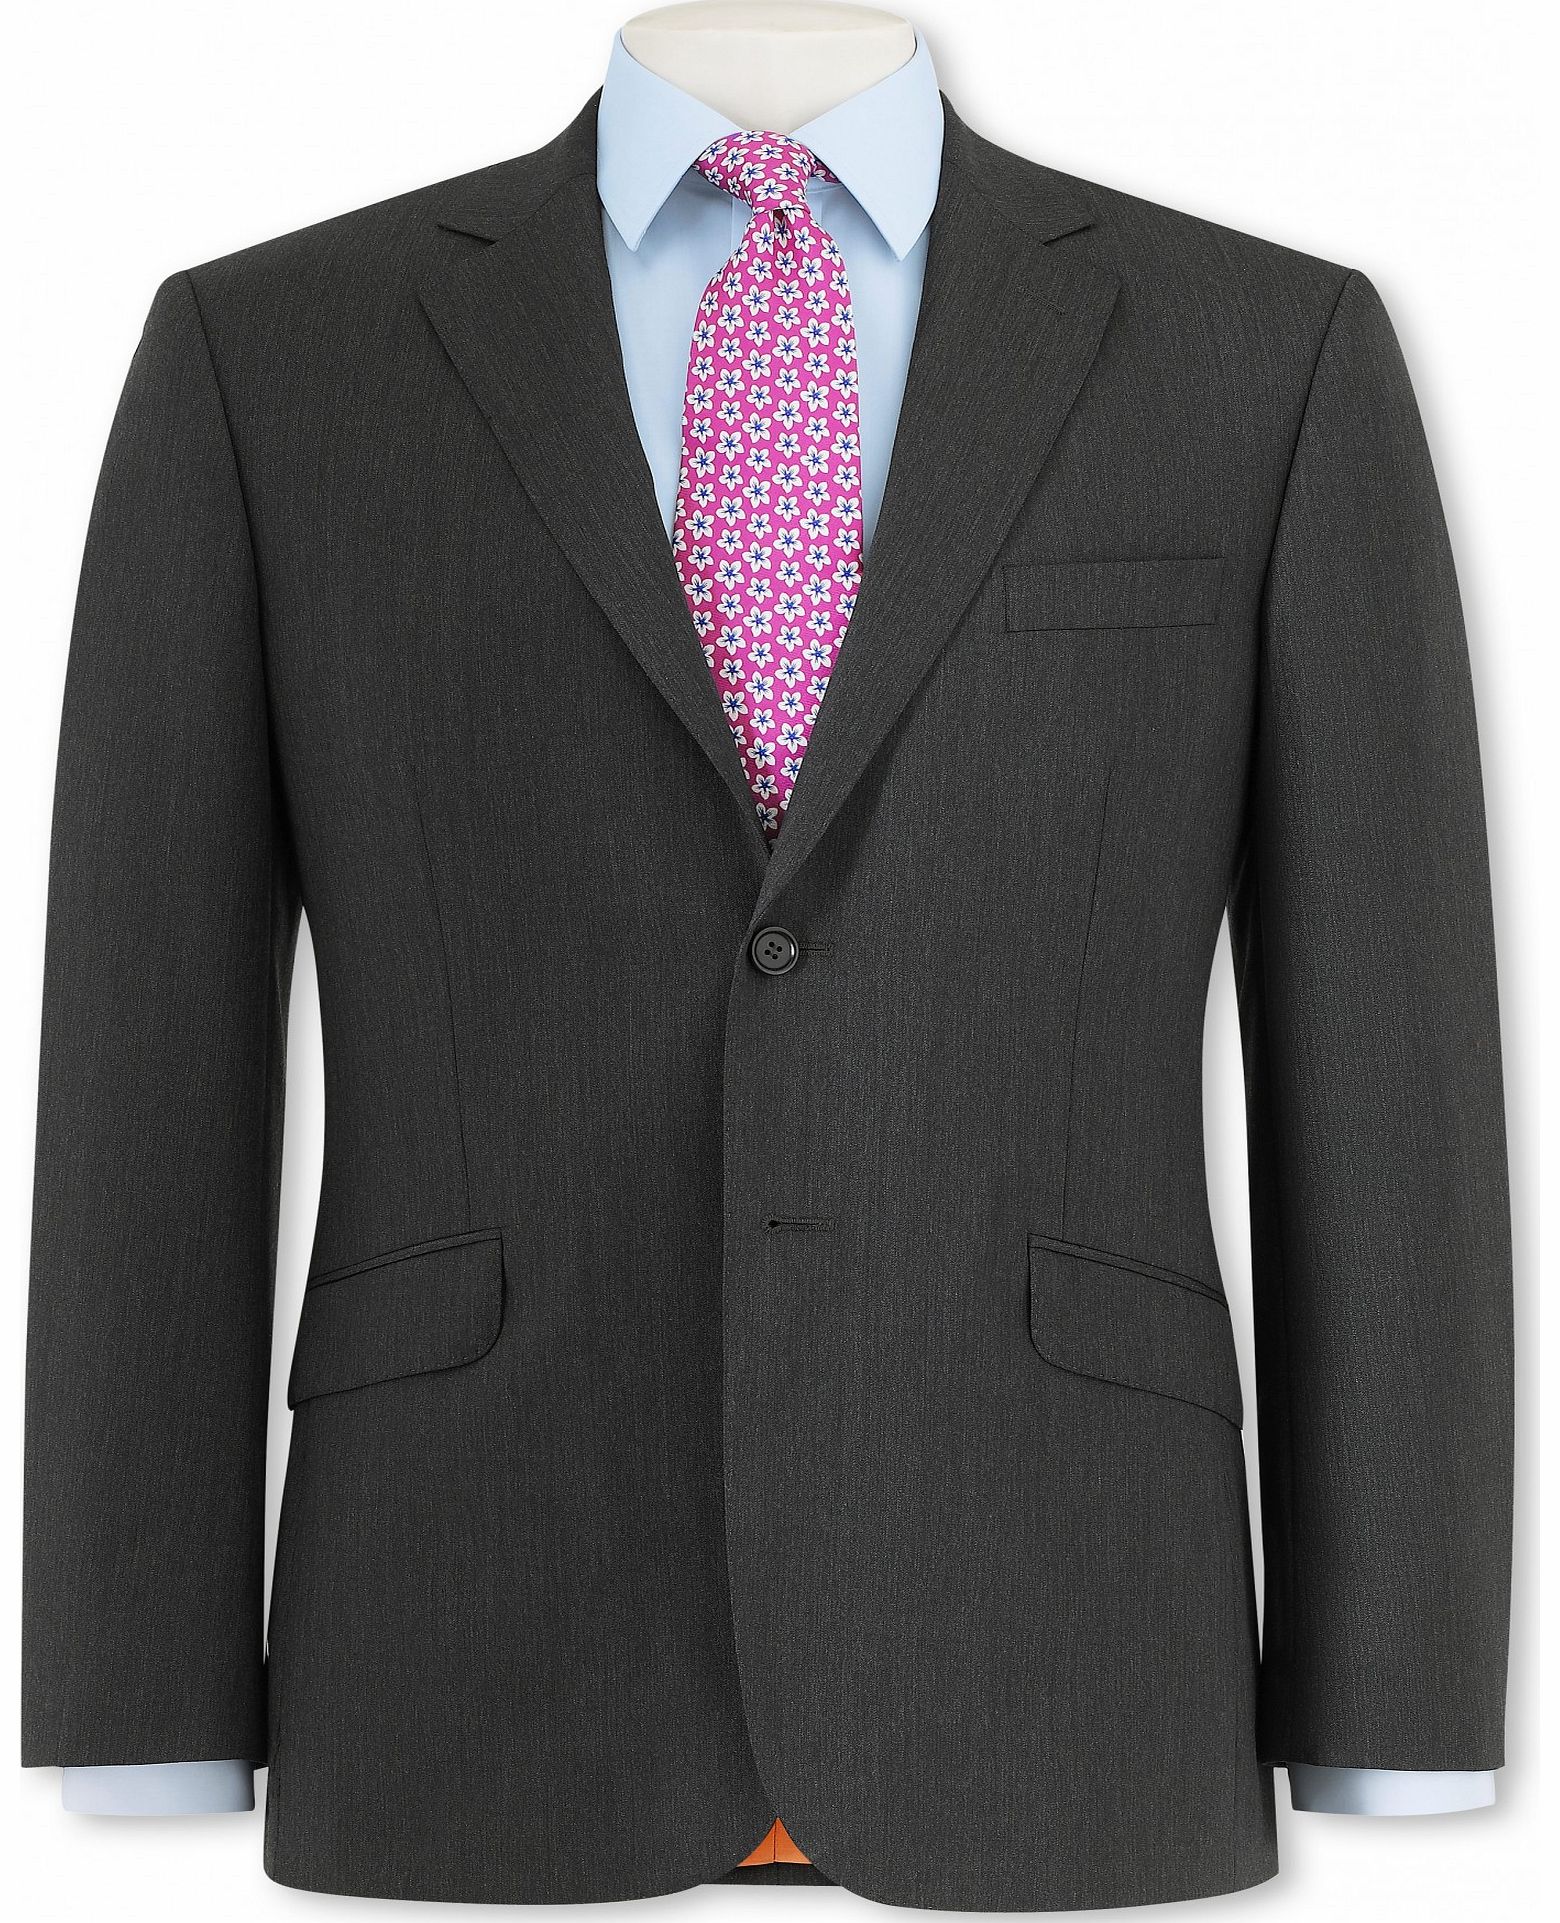 Grey Herringbone Suit Jacket 42`` Long